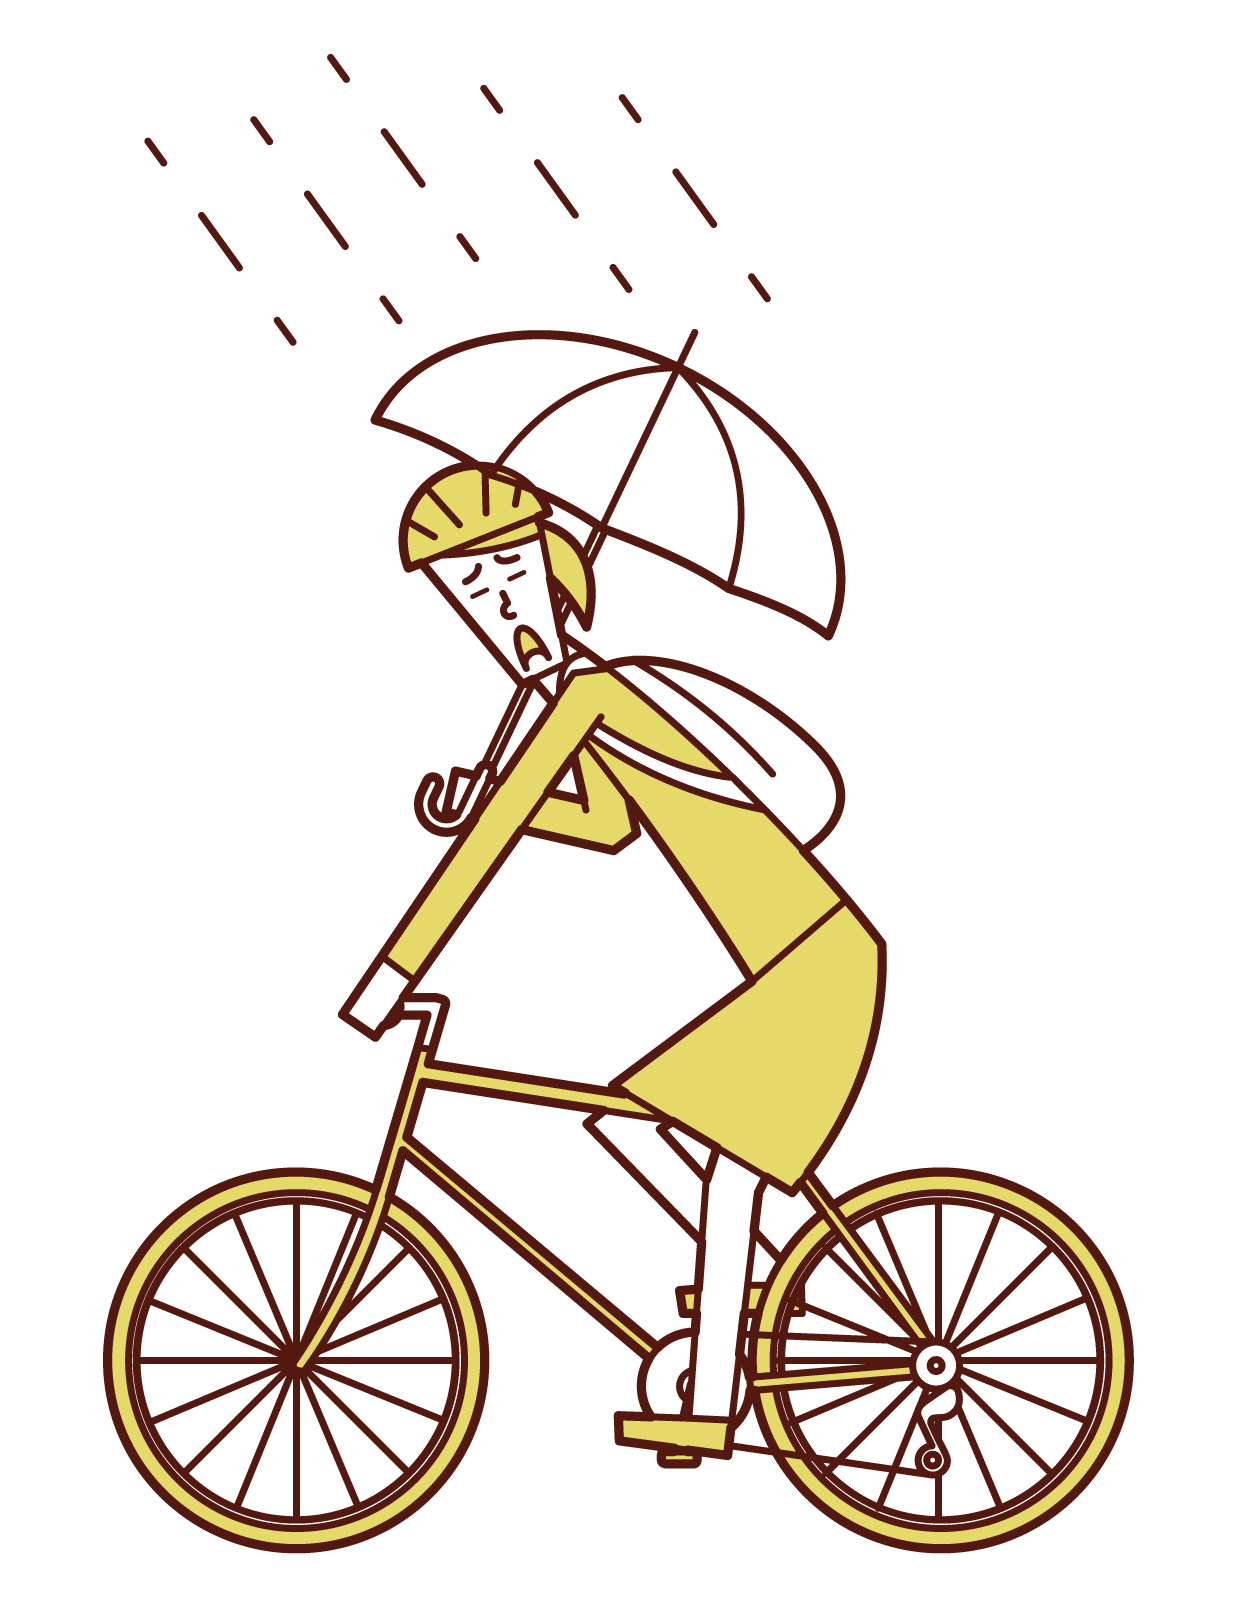 自転車に荷物を載せたり 傘を差した運転の危険性